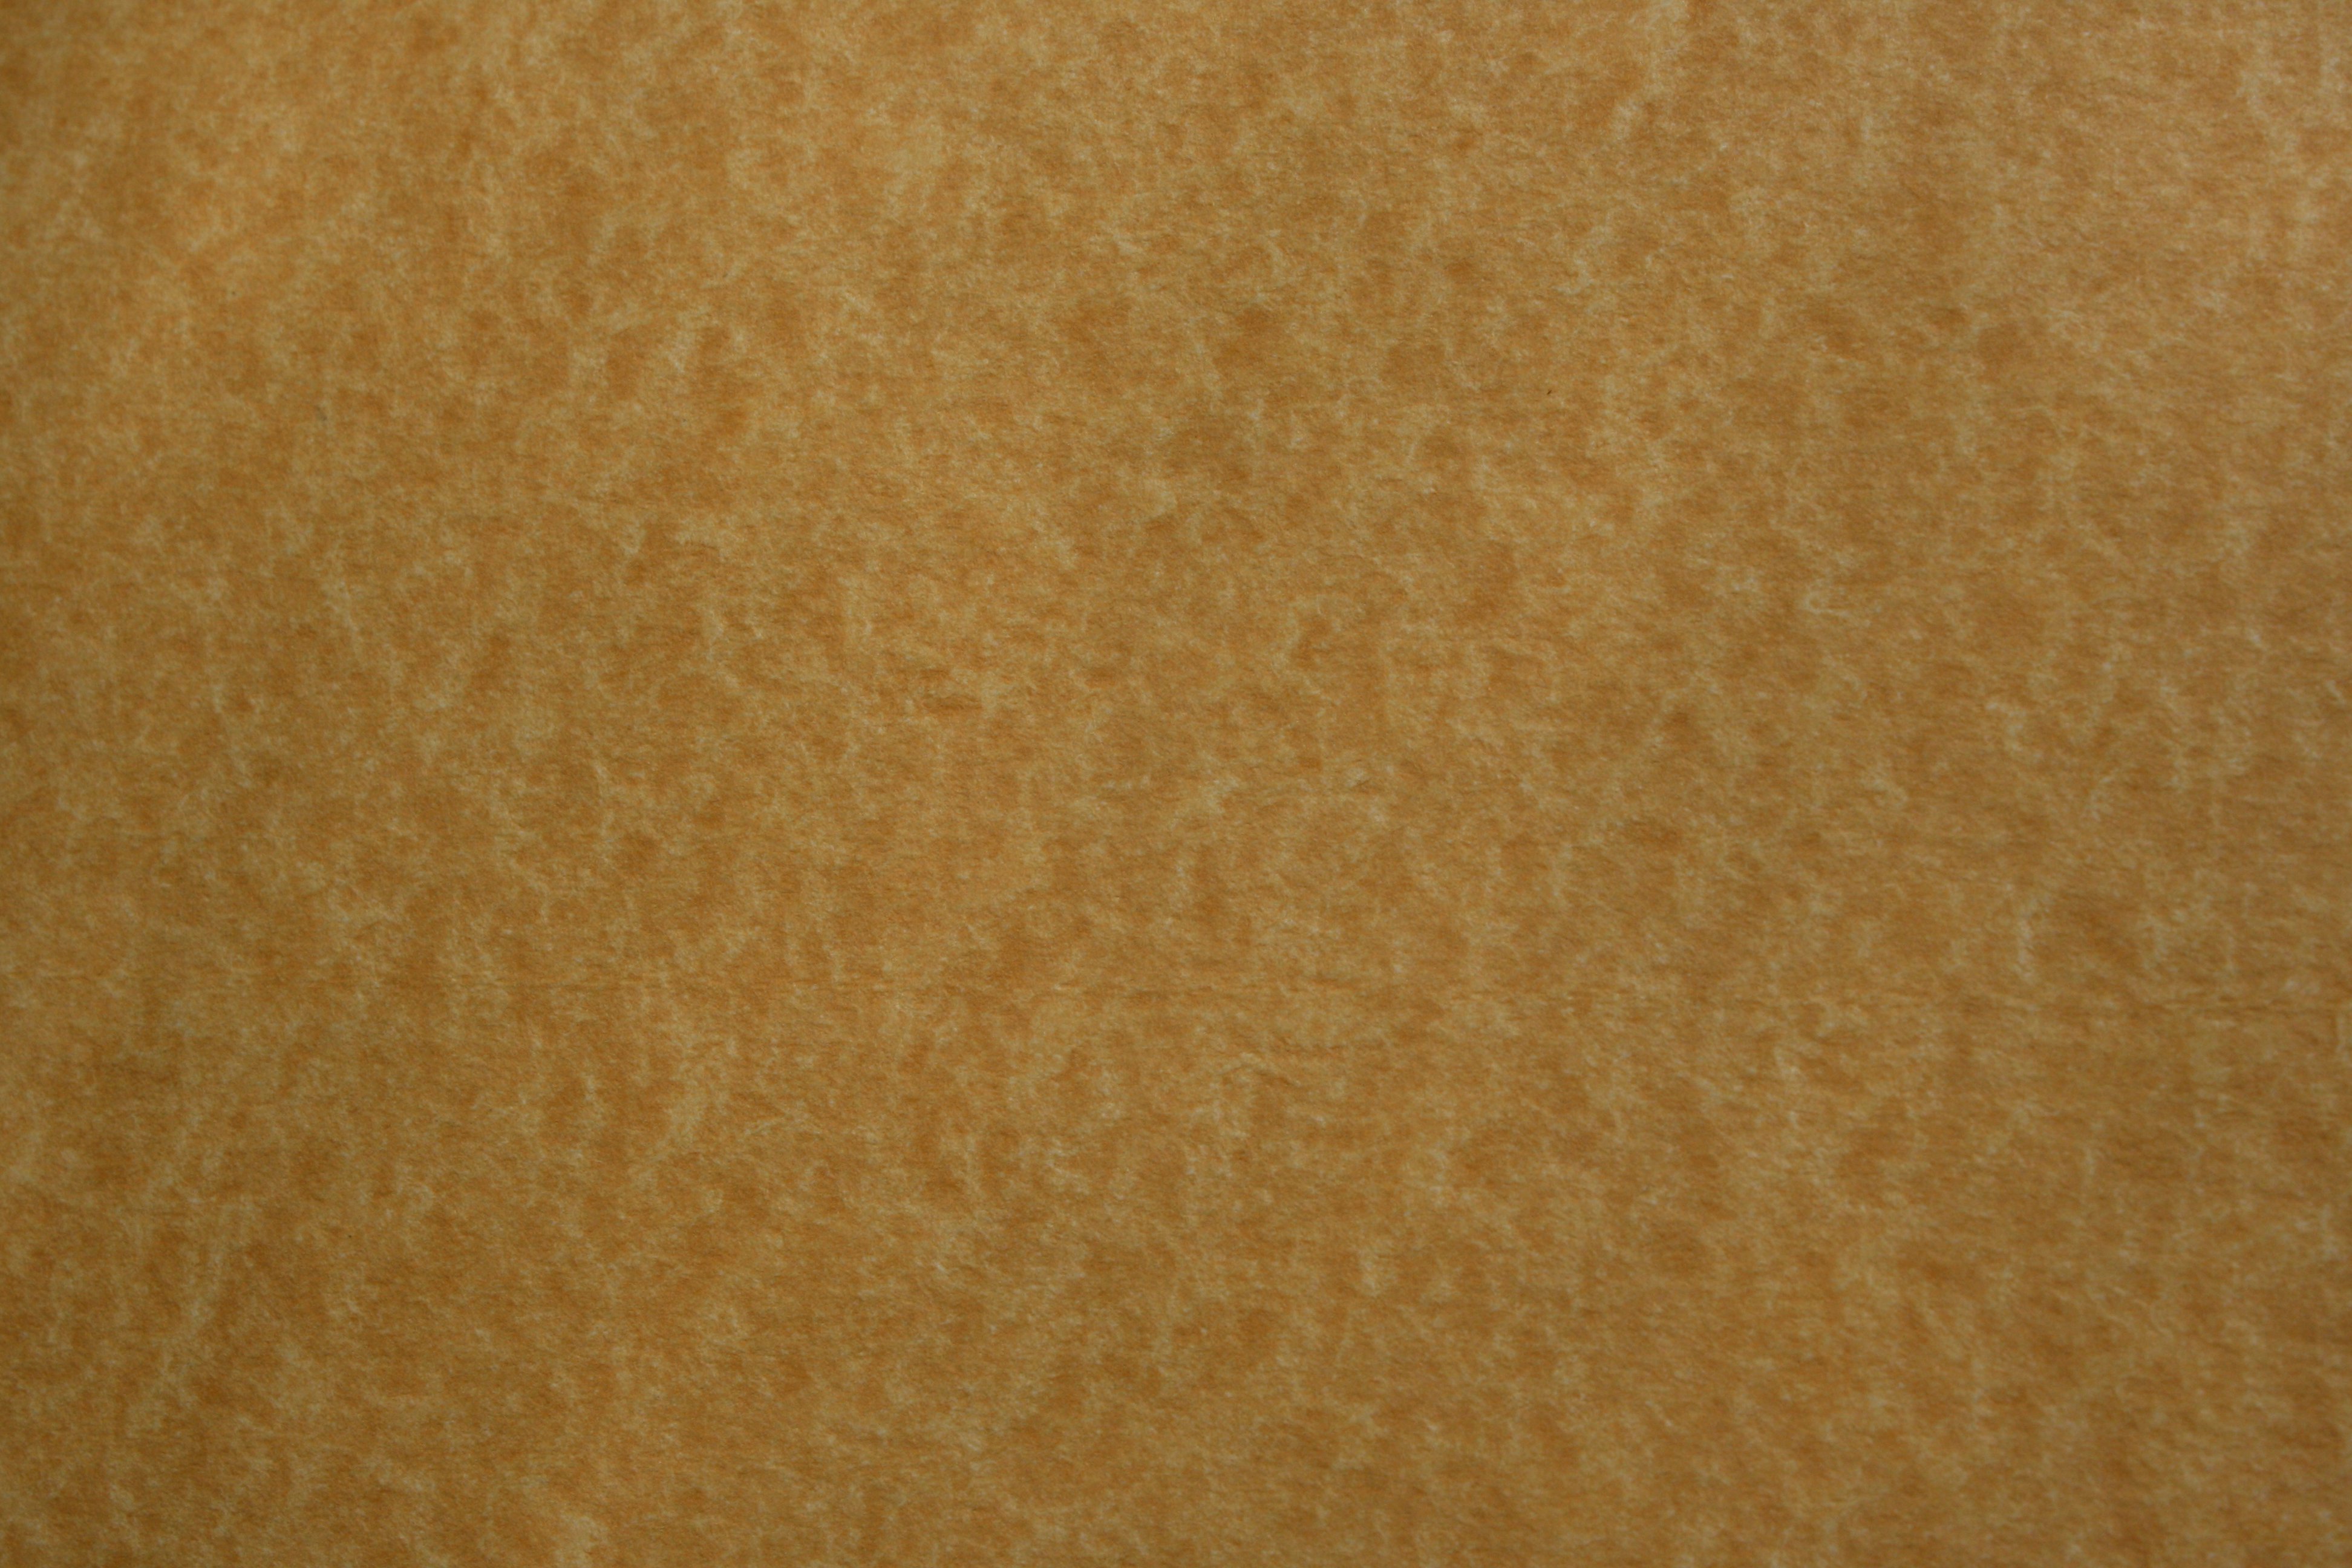 Parchment Paper Texture Picture | Free Photograph | Photos Public Domain